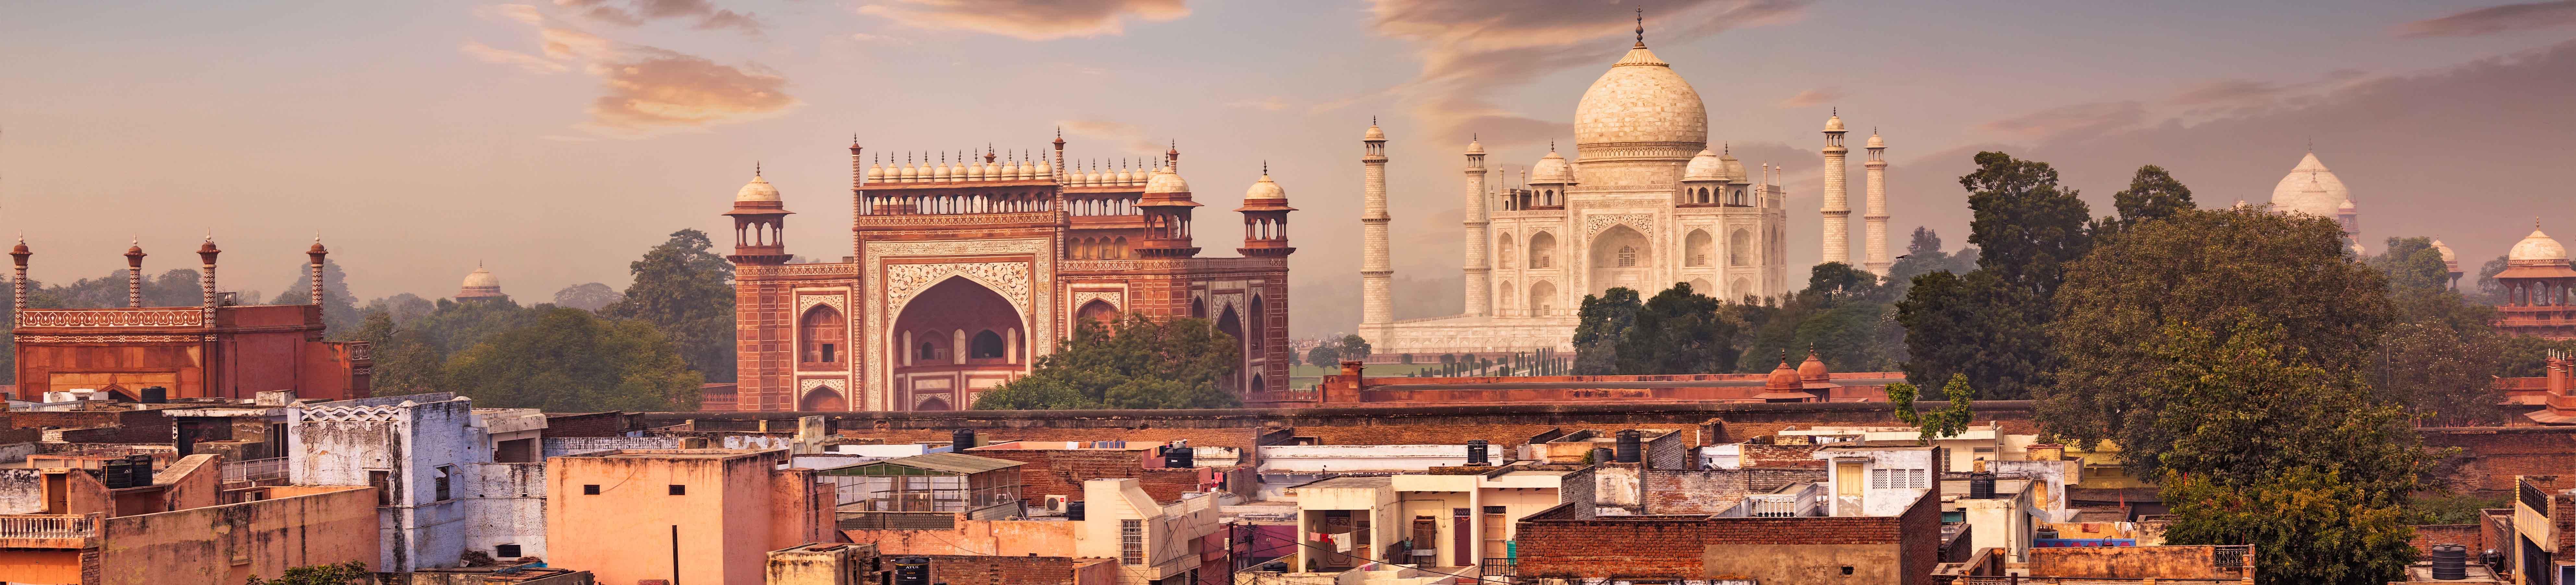 Que faire en Inde : la ville de Delhi, la région de Rajasthan et les autres monuments à découvrir pendant votre voyage dans ce pays unique au monde